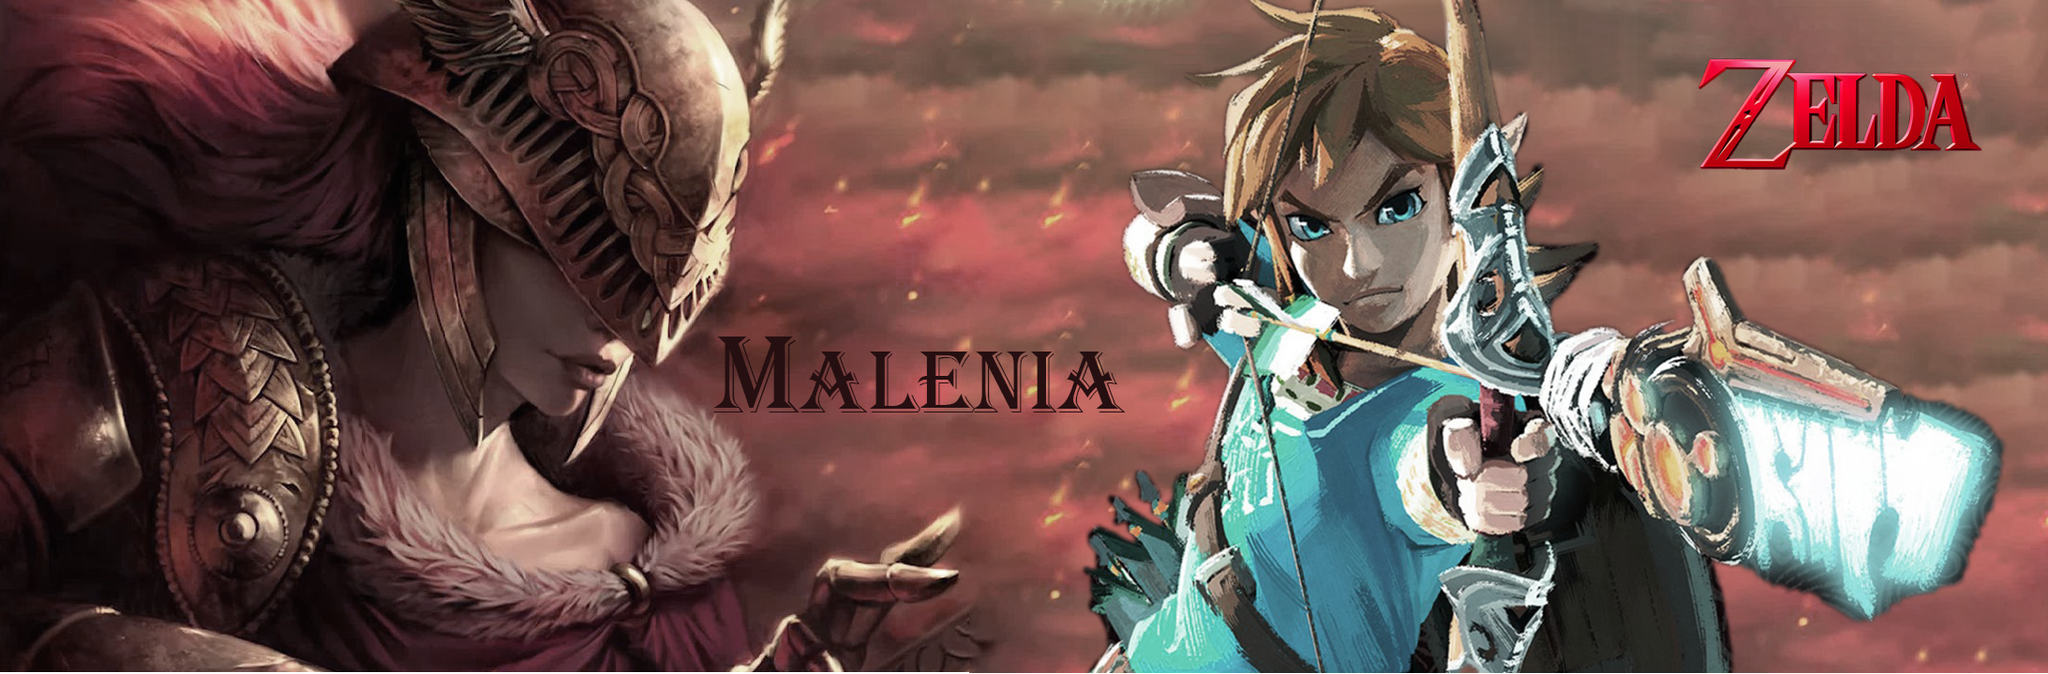 Elden Ring: Người hâm mộ thể hiện tài năng với khả năng kết hợp Công chúa Zelda với Malenia